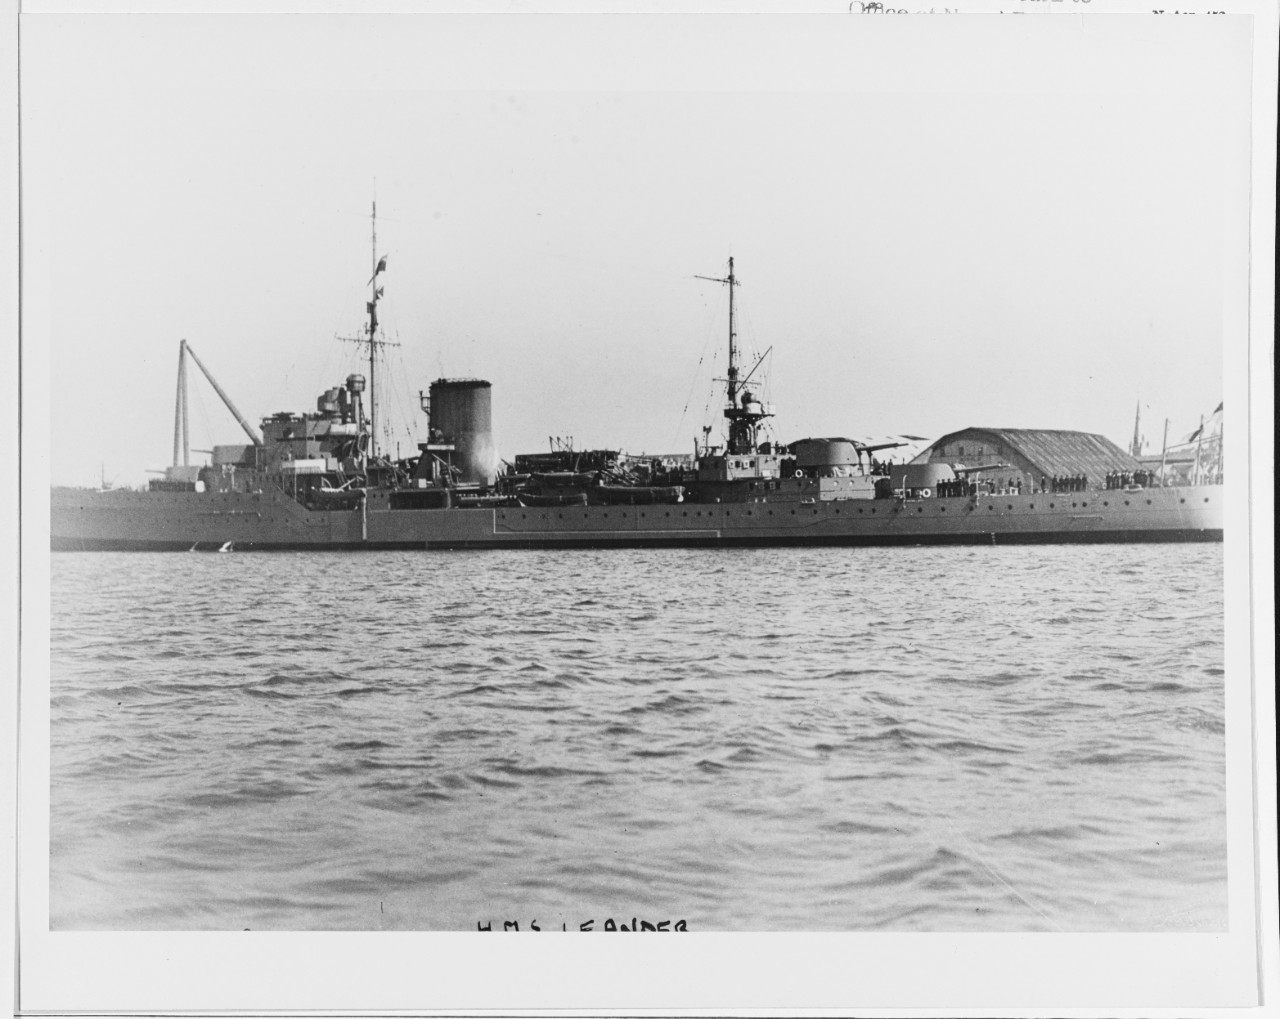 HMS LEANDER (British Cruiser, 1931)